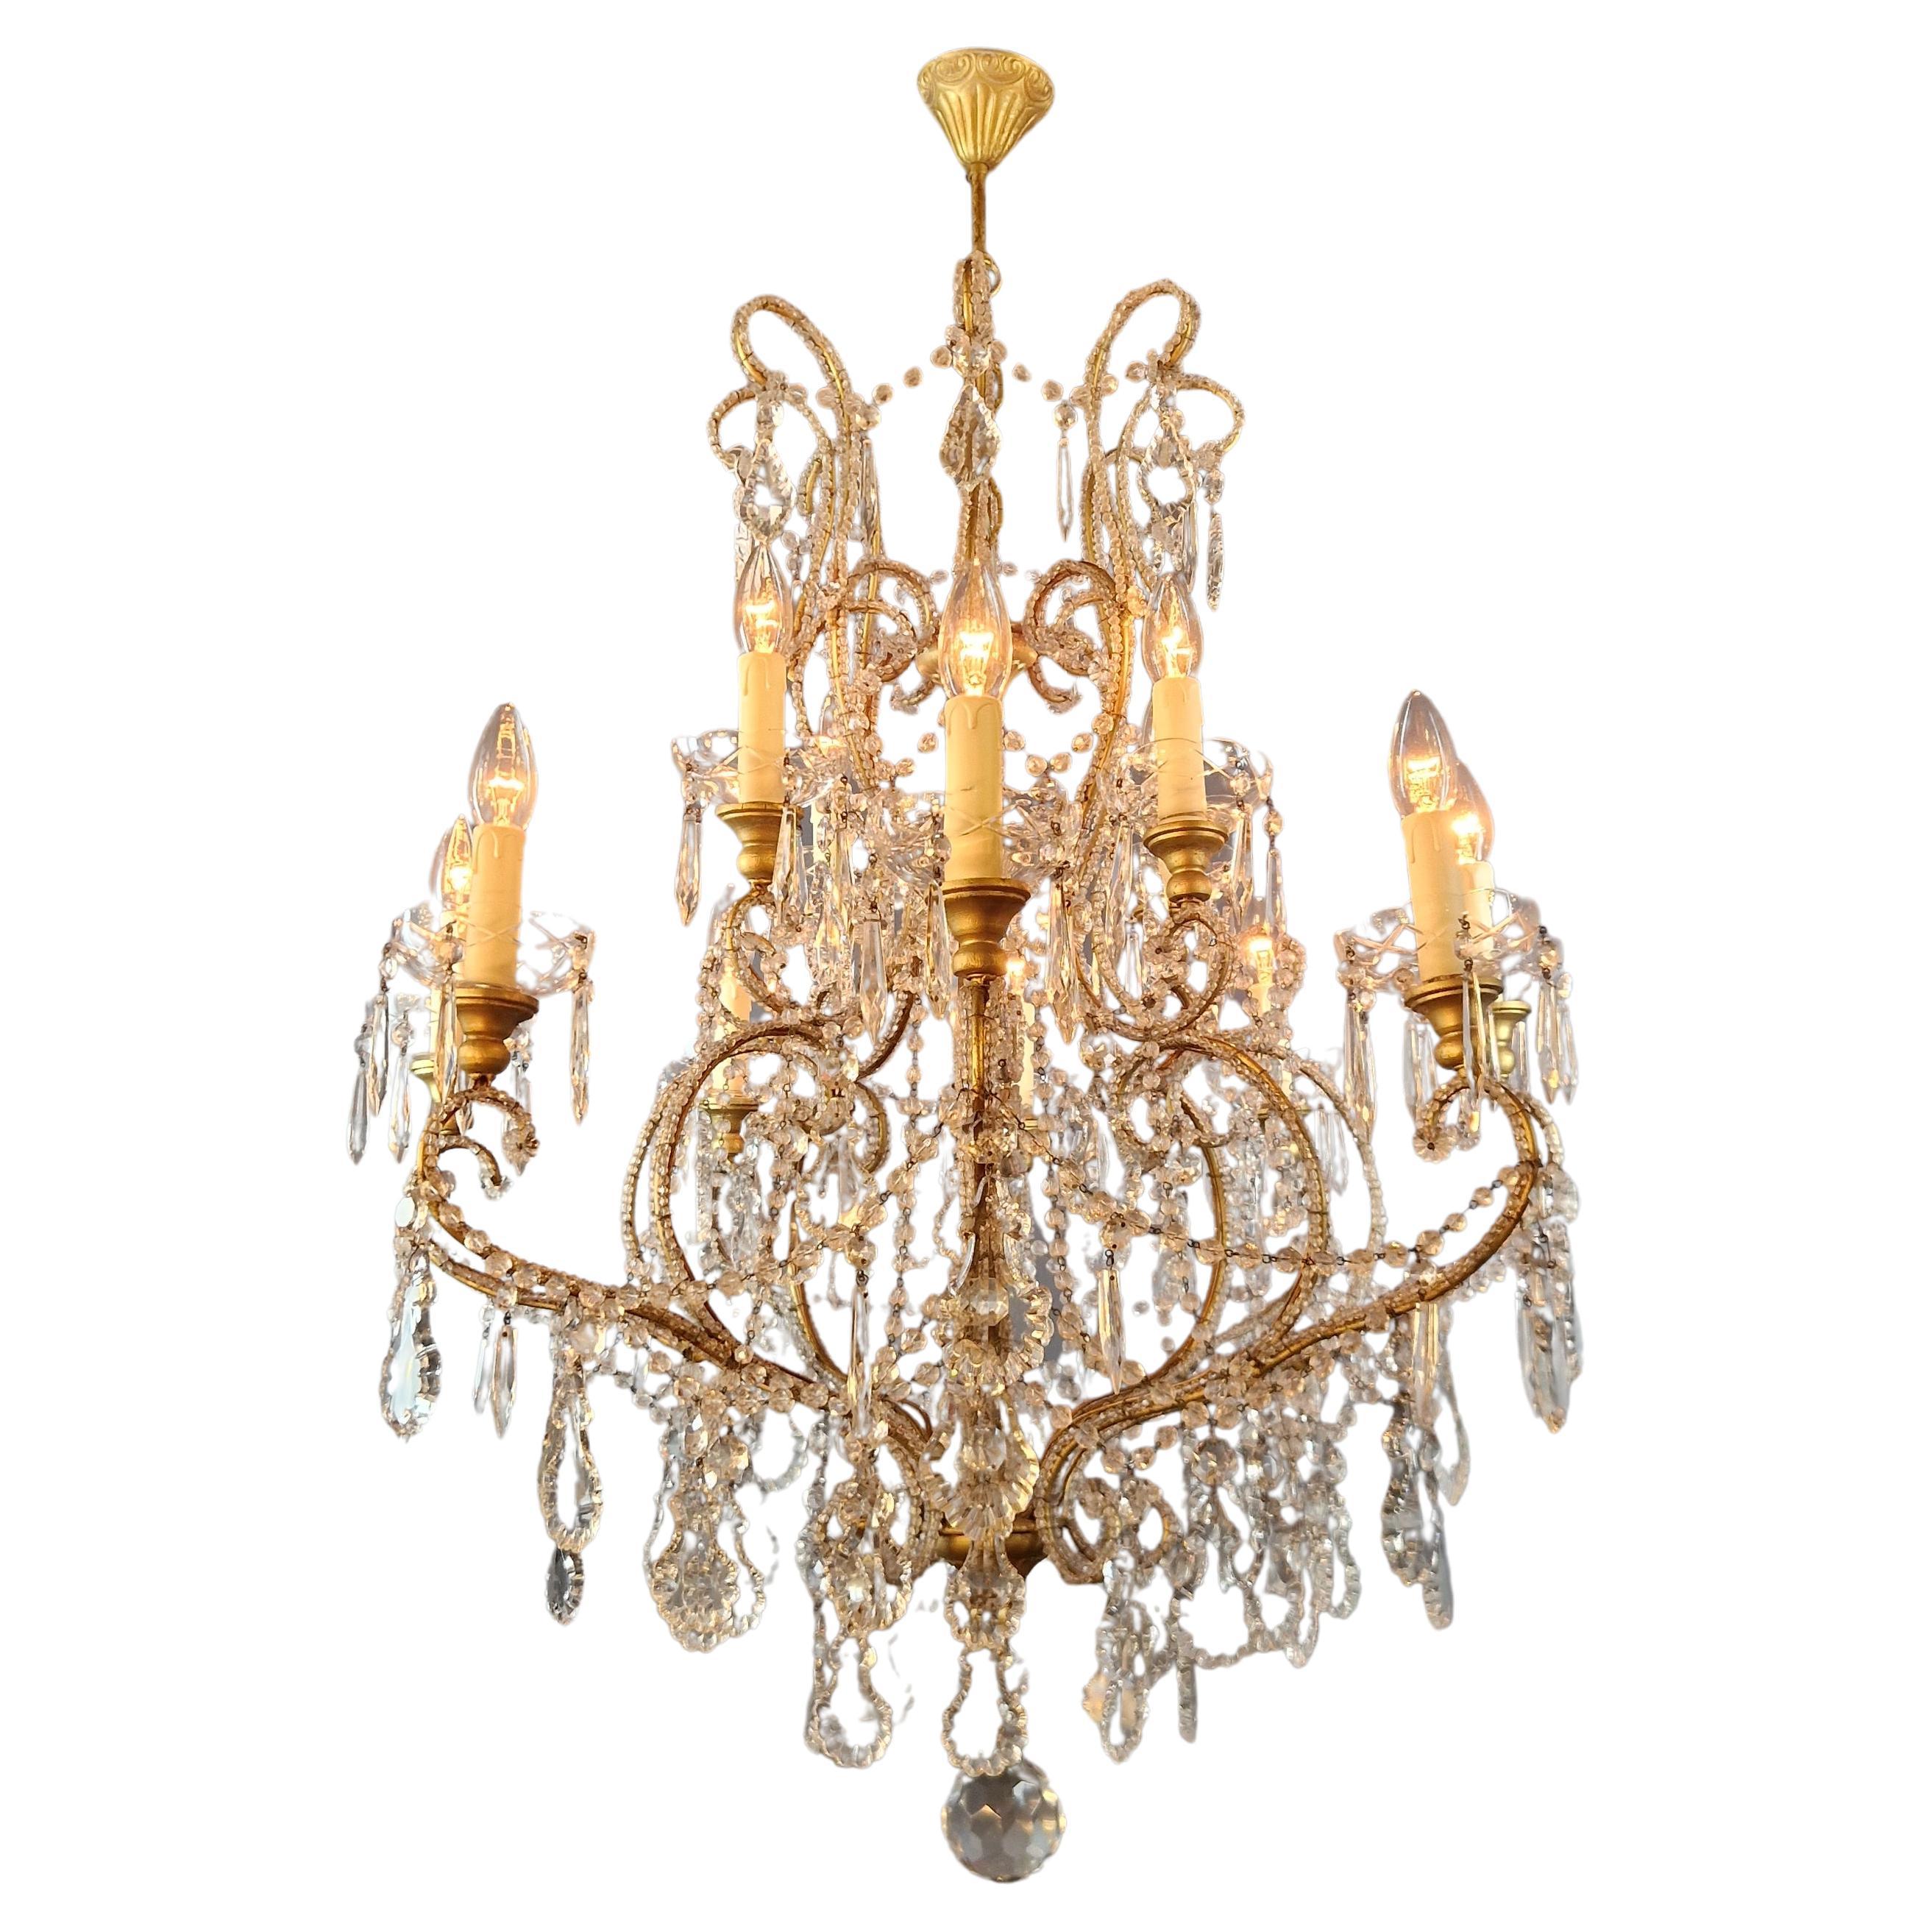 Brass Crystal Chandelier Antique Ceiling Lamp Lustre Art Nouveau Lamp For Sale